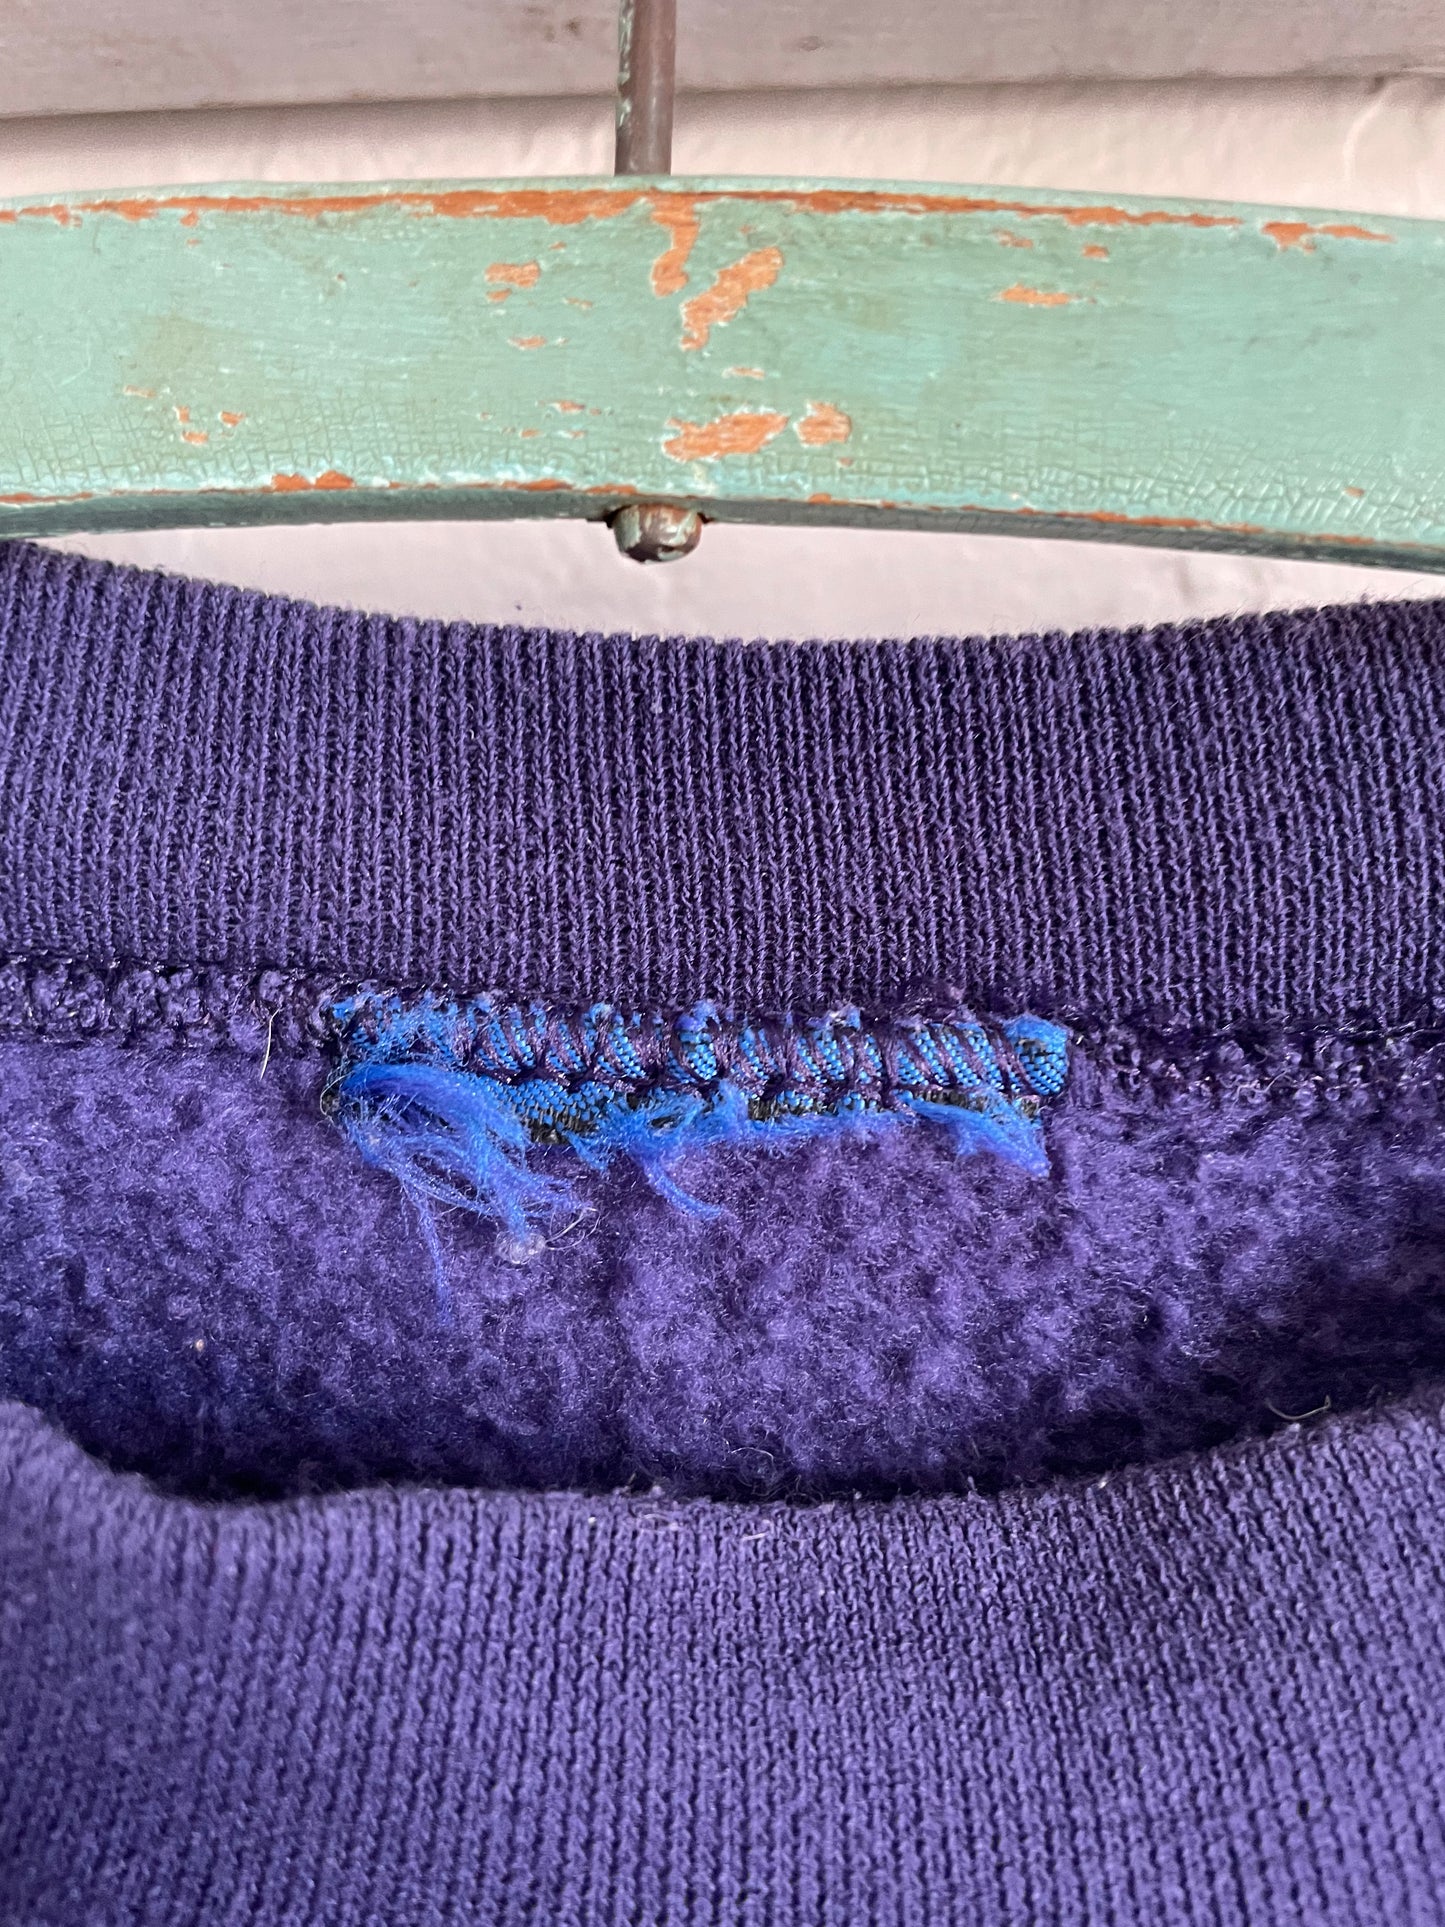 90s Purple Blank Sweatshirt